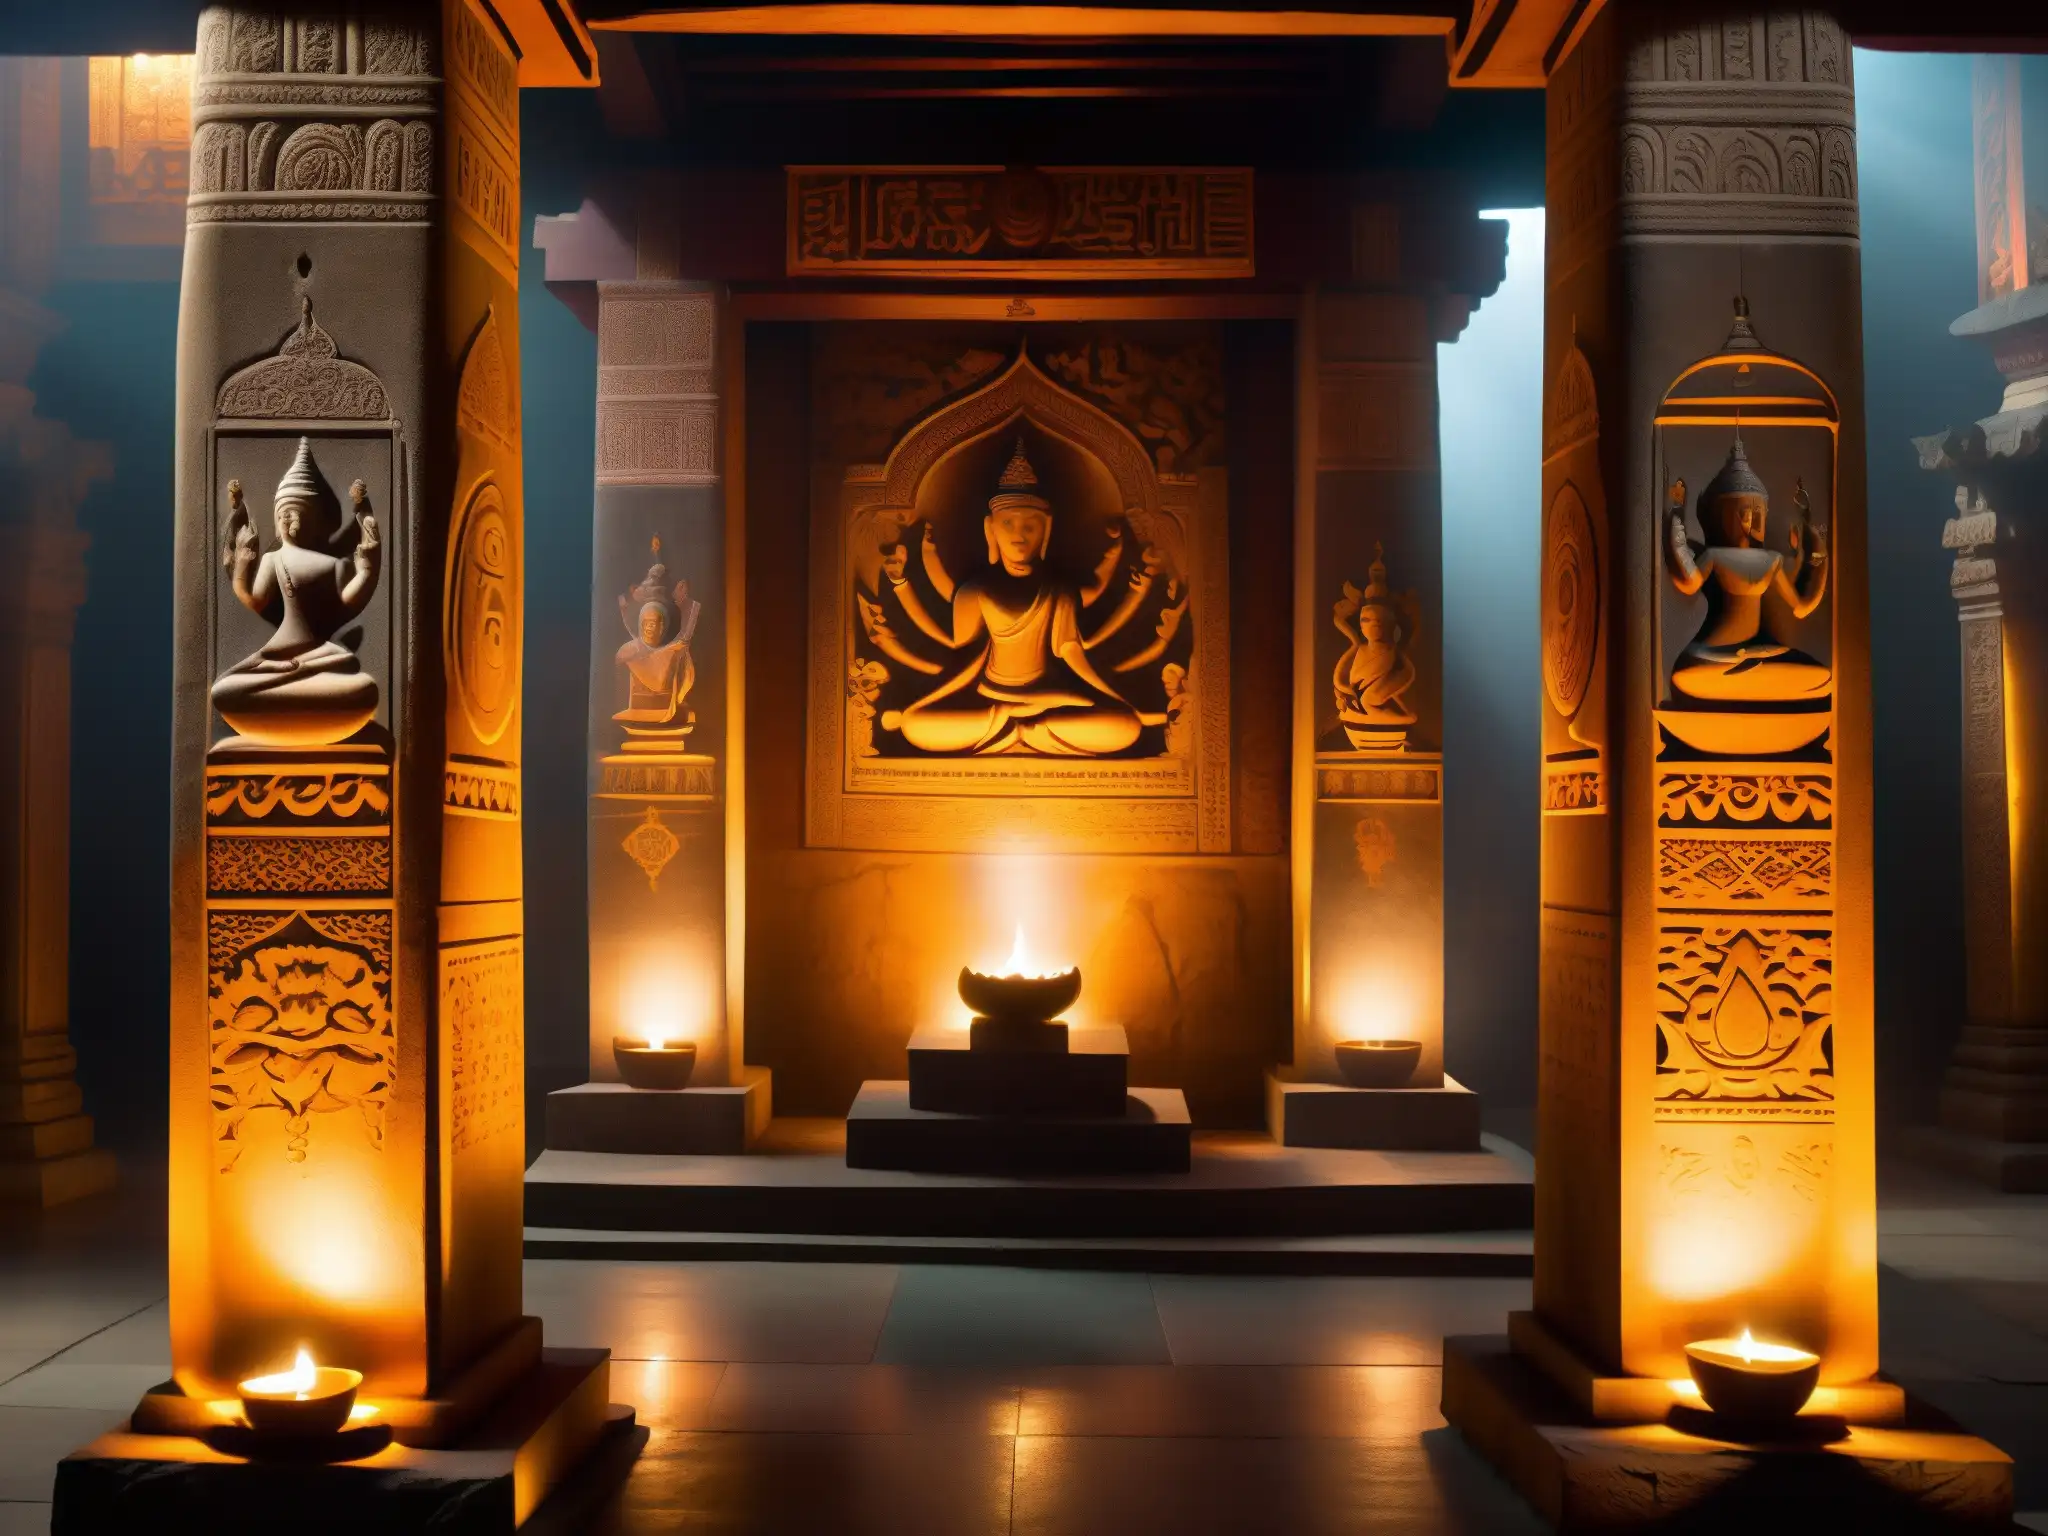 En el místico templo, los practicantes realizan rituales rodeados de yoginis voladoras y figuras místicas, creando una atmósfera esotérica